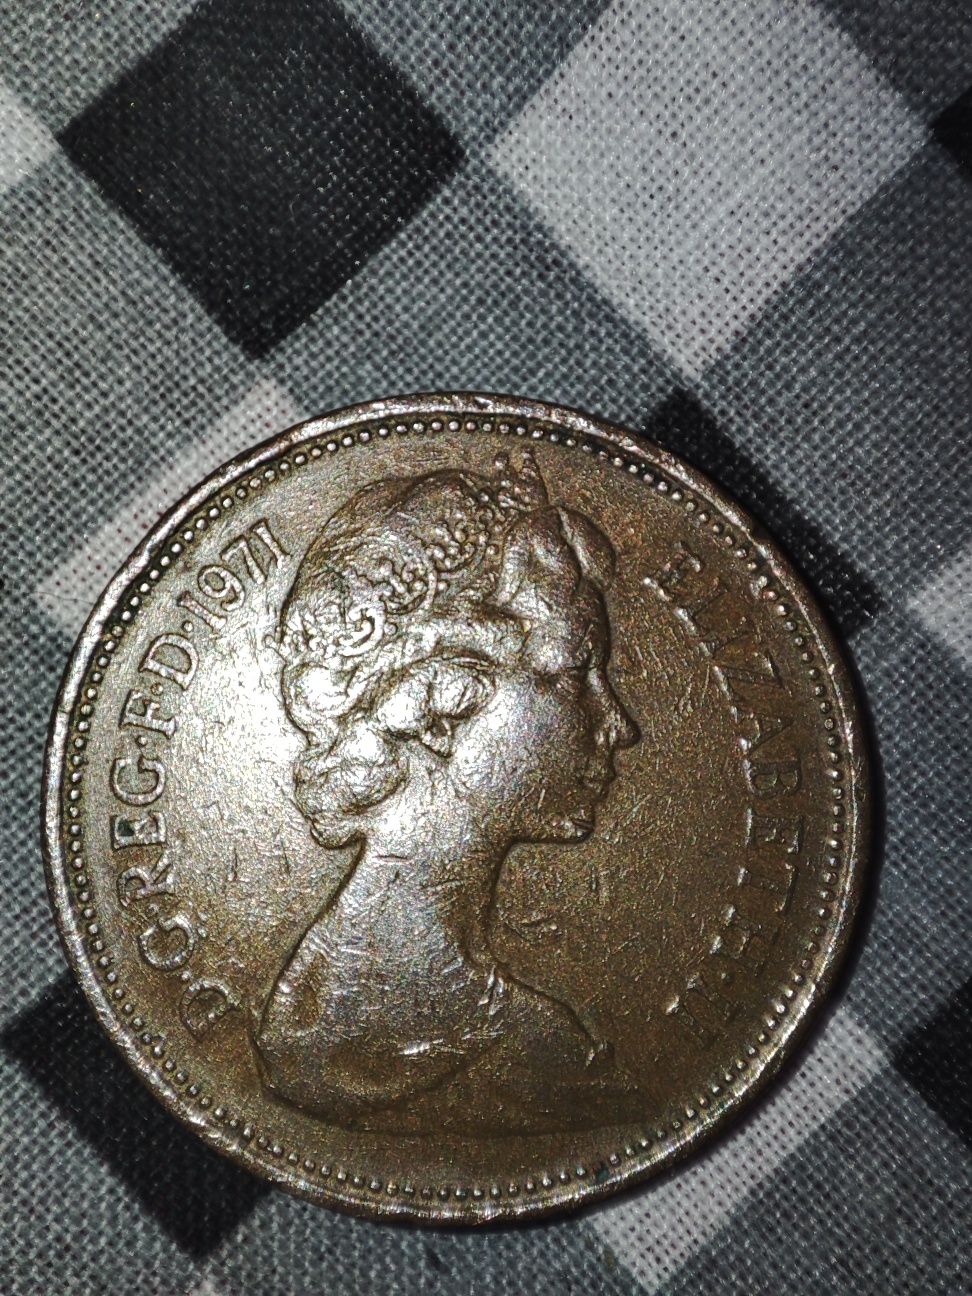 Редкая монета 1971 года